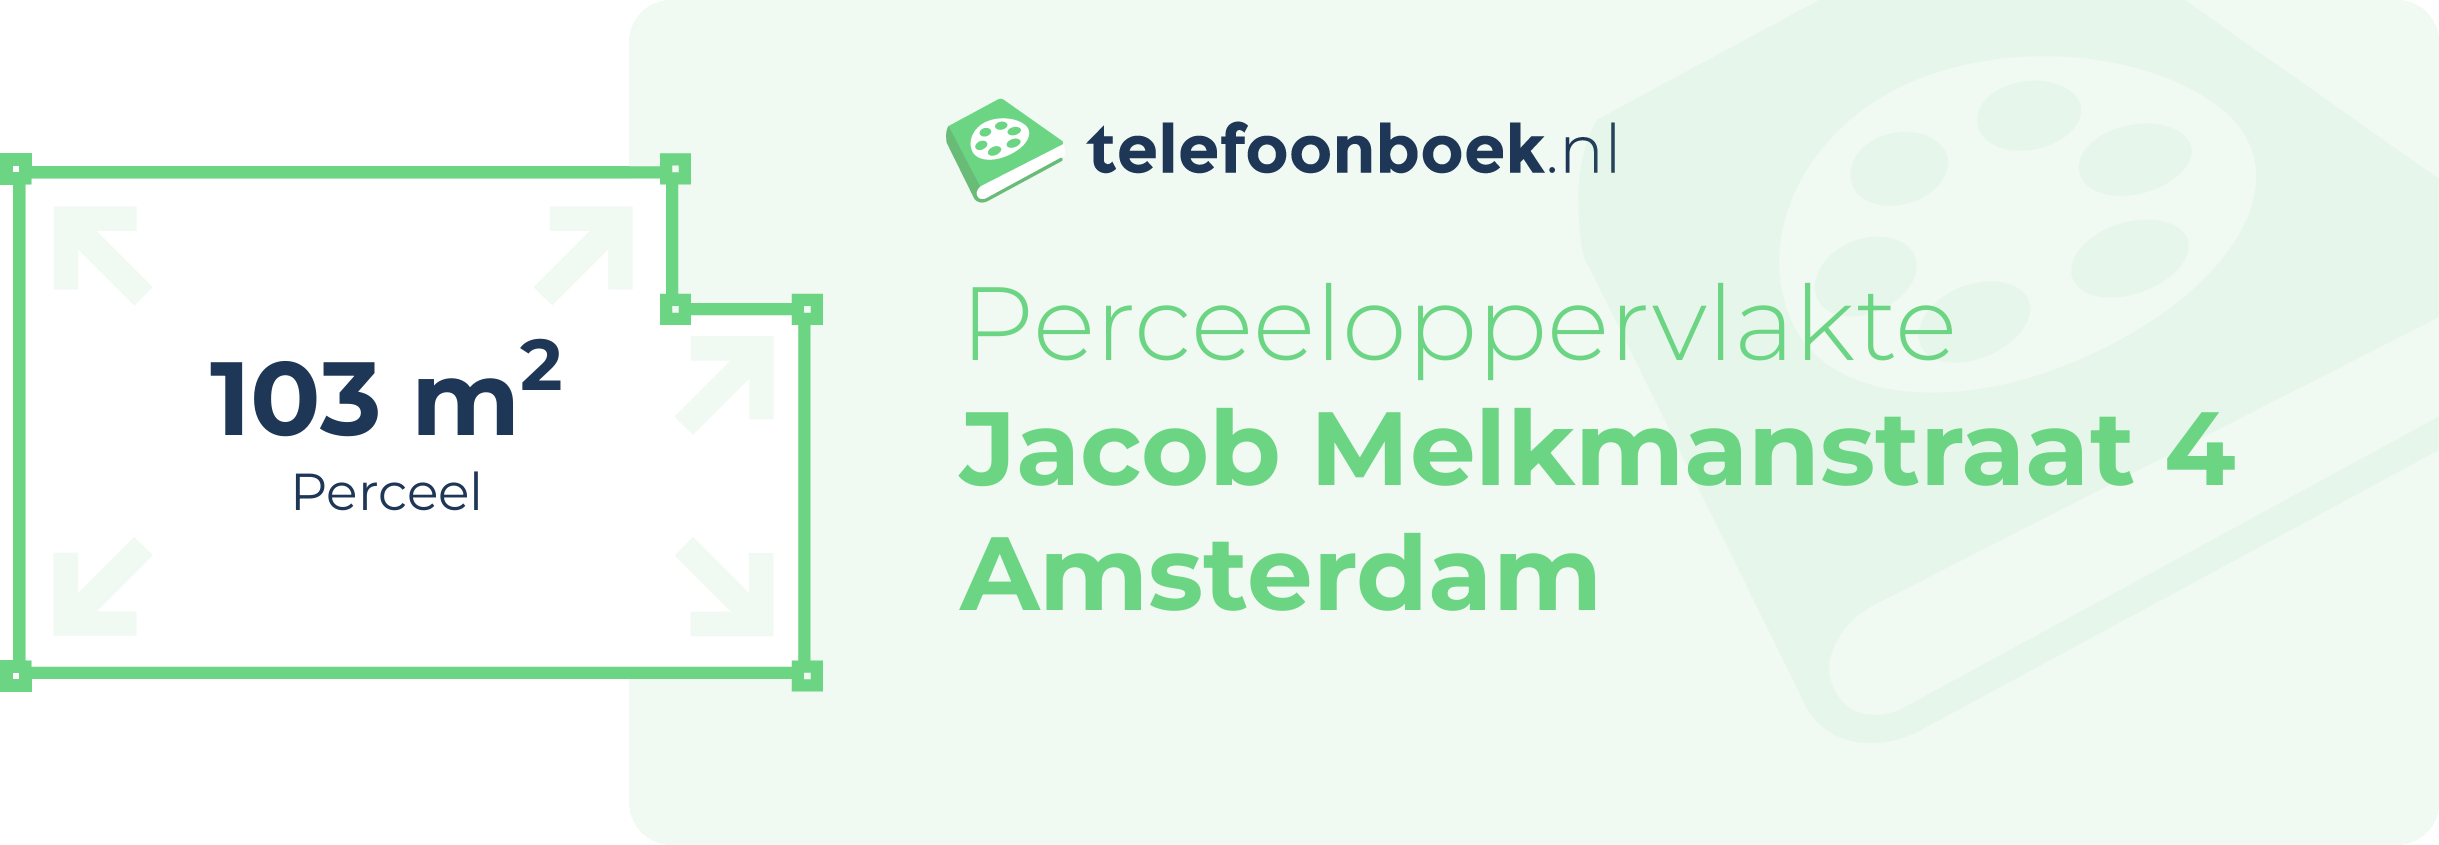 Perceeloppervlakte Jacob Melkmanstraat 4 Amsterdam